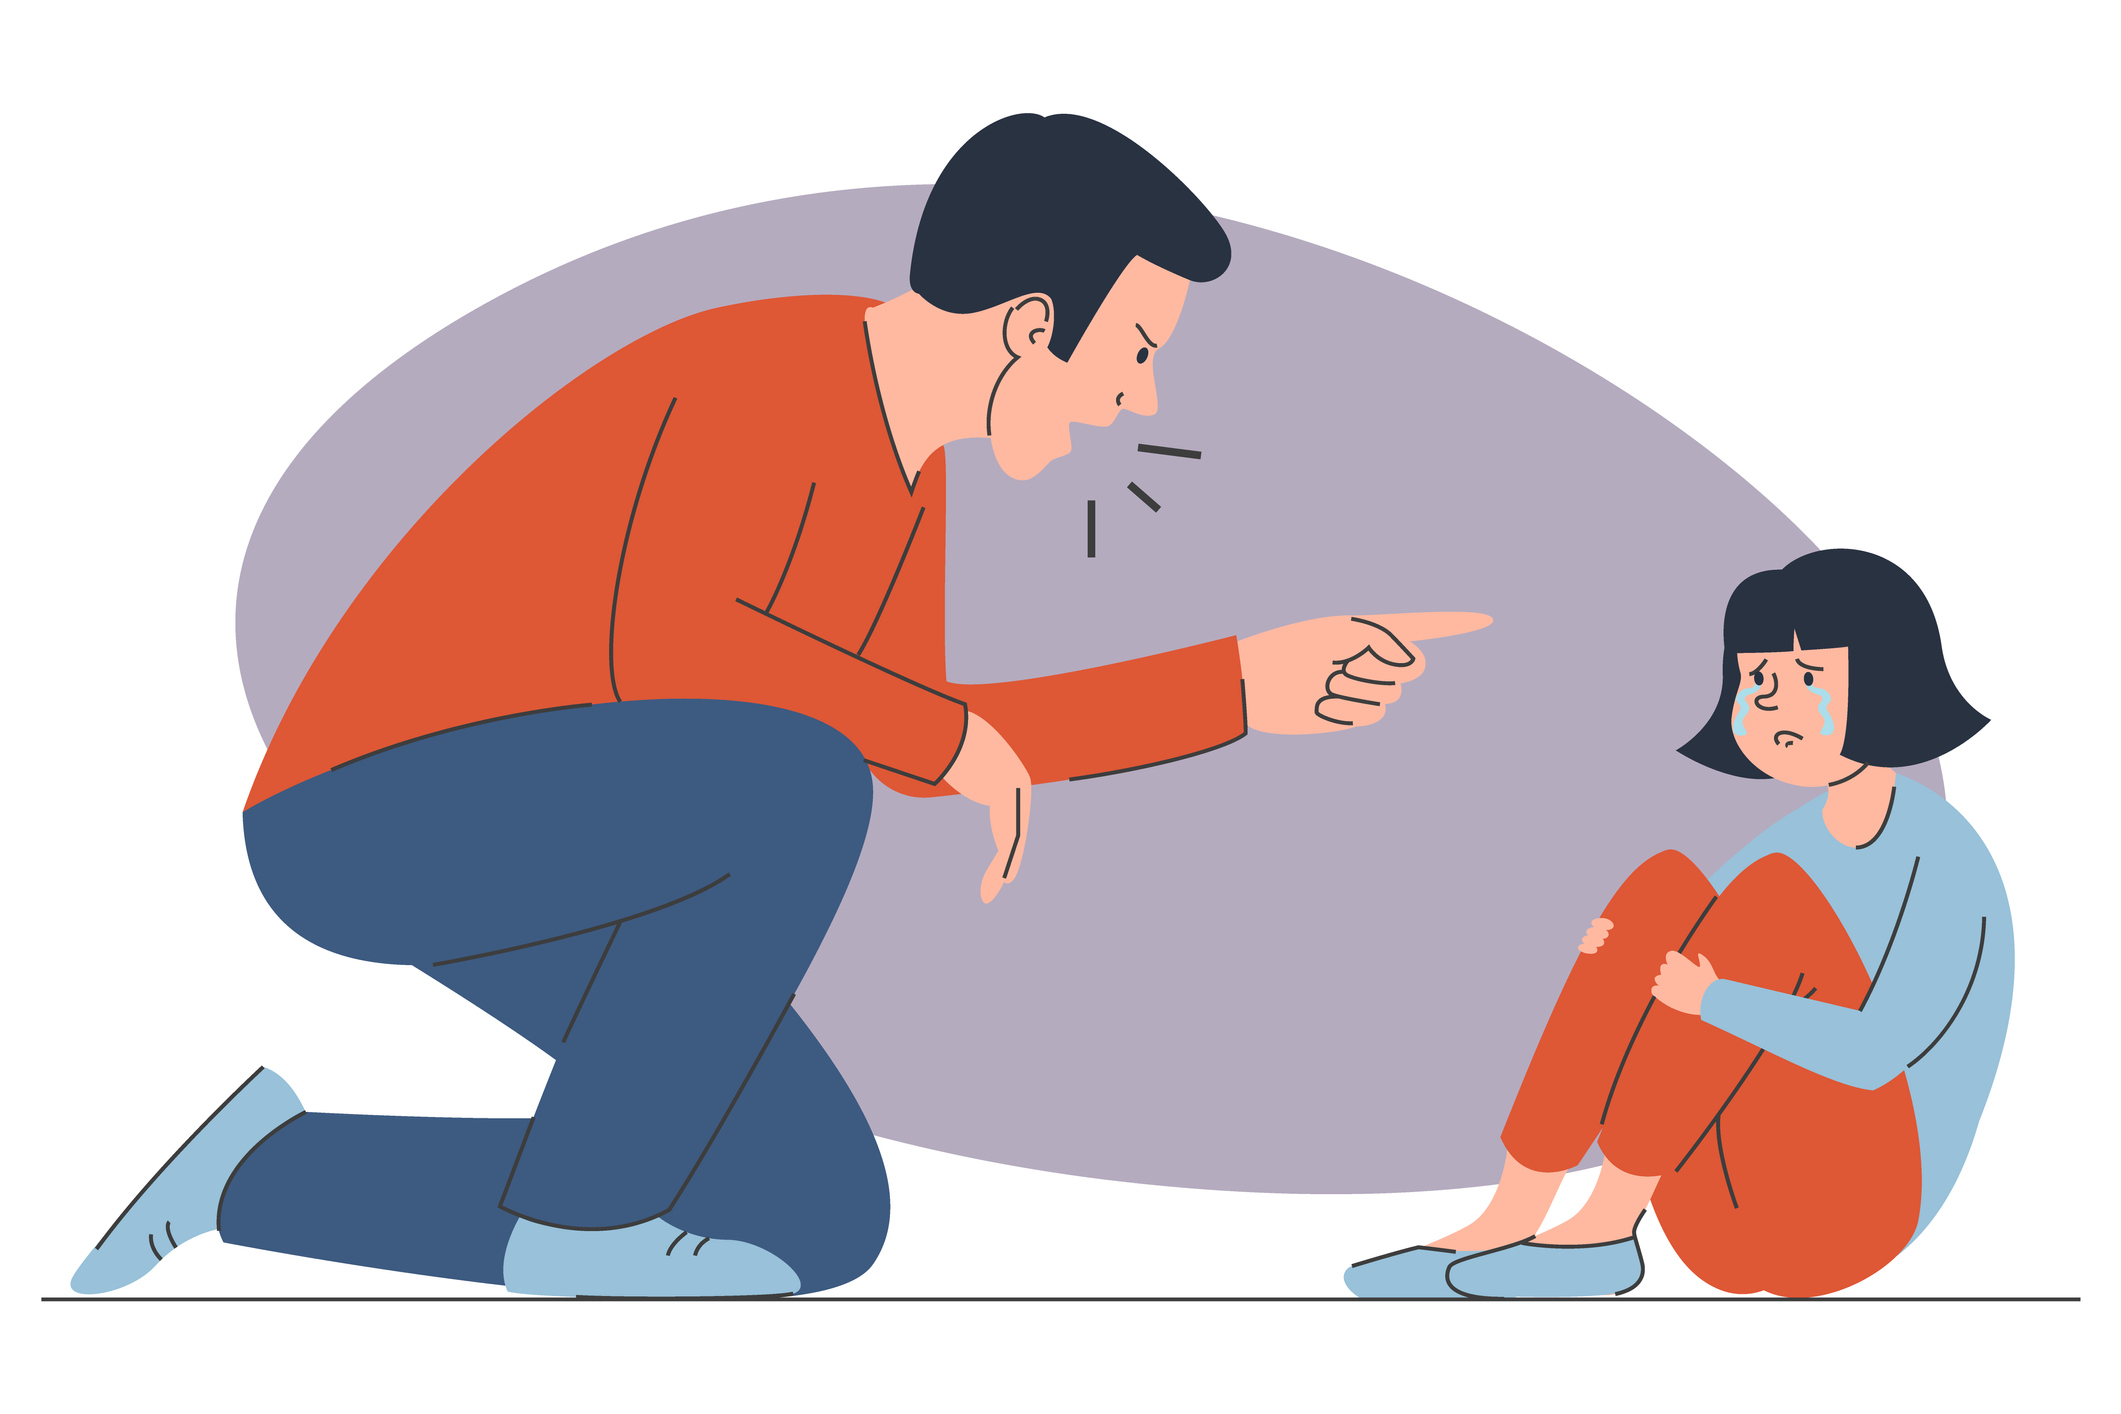 Sobre fundo branco, ilustração de um homem adulto, o pai, gritando com uma criança, a filha. Ambos têm a pele clara e usam roupa azul e laranja. Eles têm o cabelo preto e estão no chão. A menina está sentada e o pai está ajoelhado, apontando o dedo para ela.